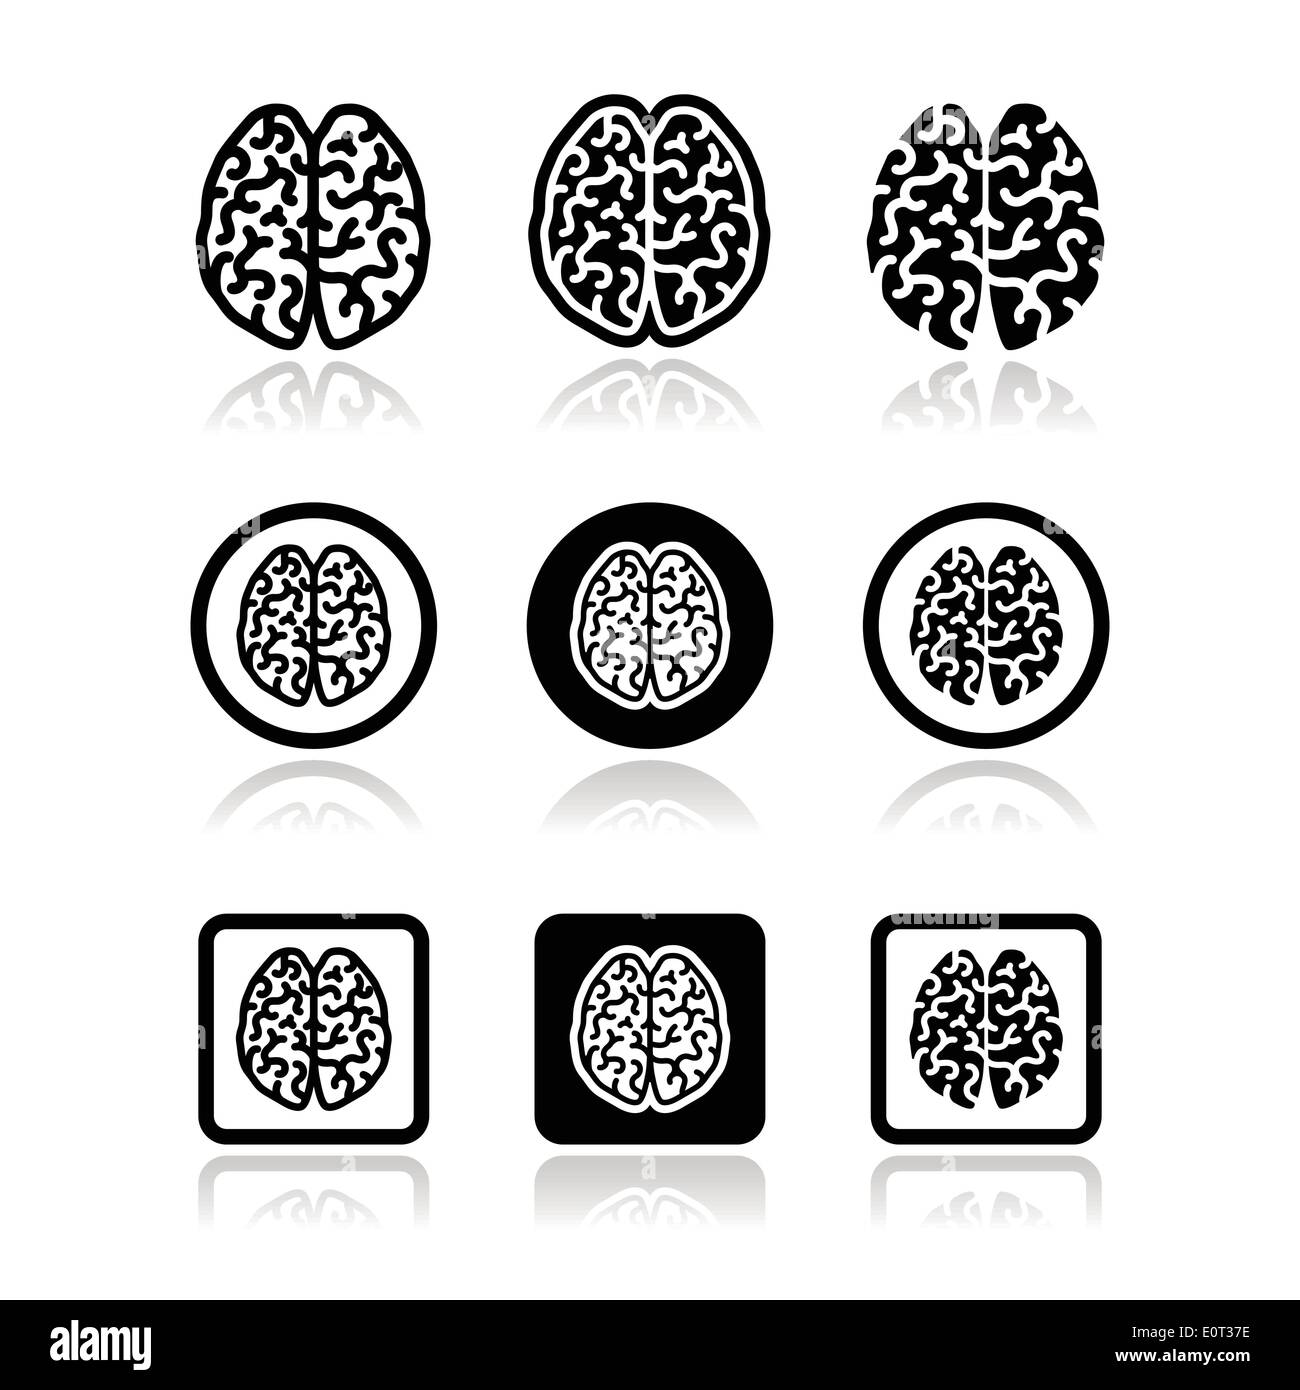 Conjunto De Iconos Del Cerebro Humano La Inteligencia La Creatividad Concepto Imagen Vector De 3734